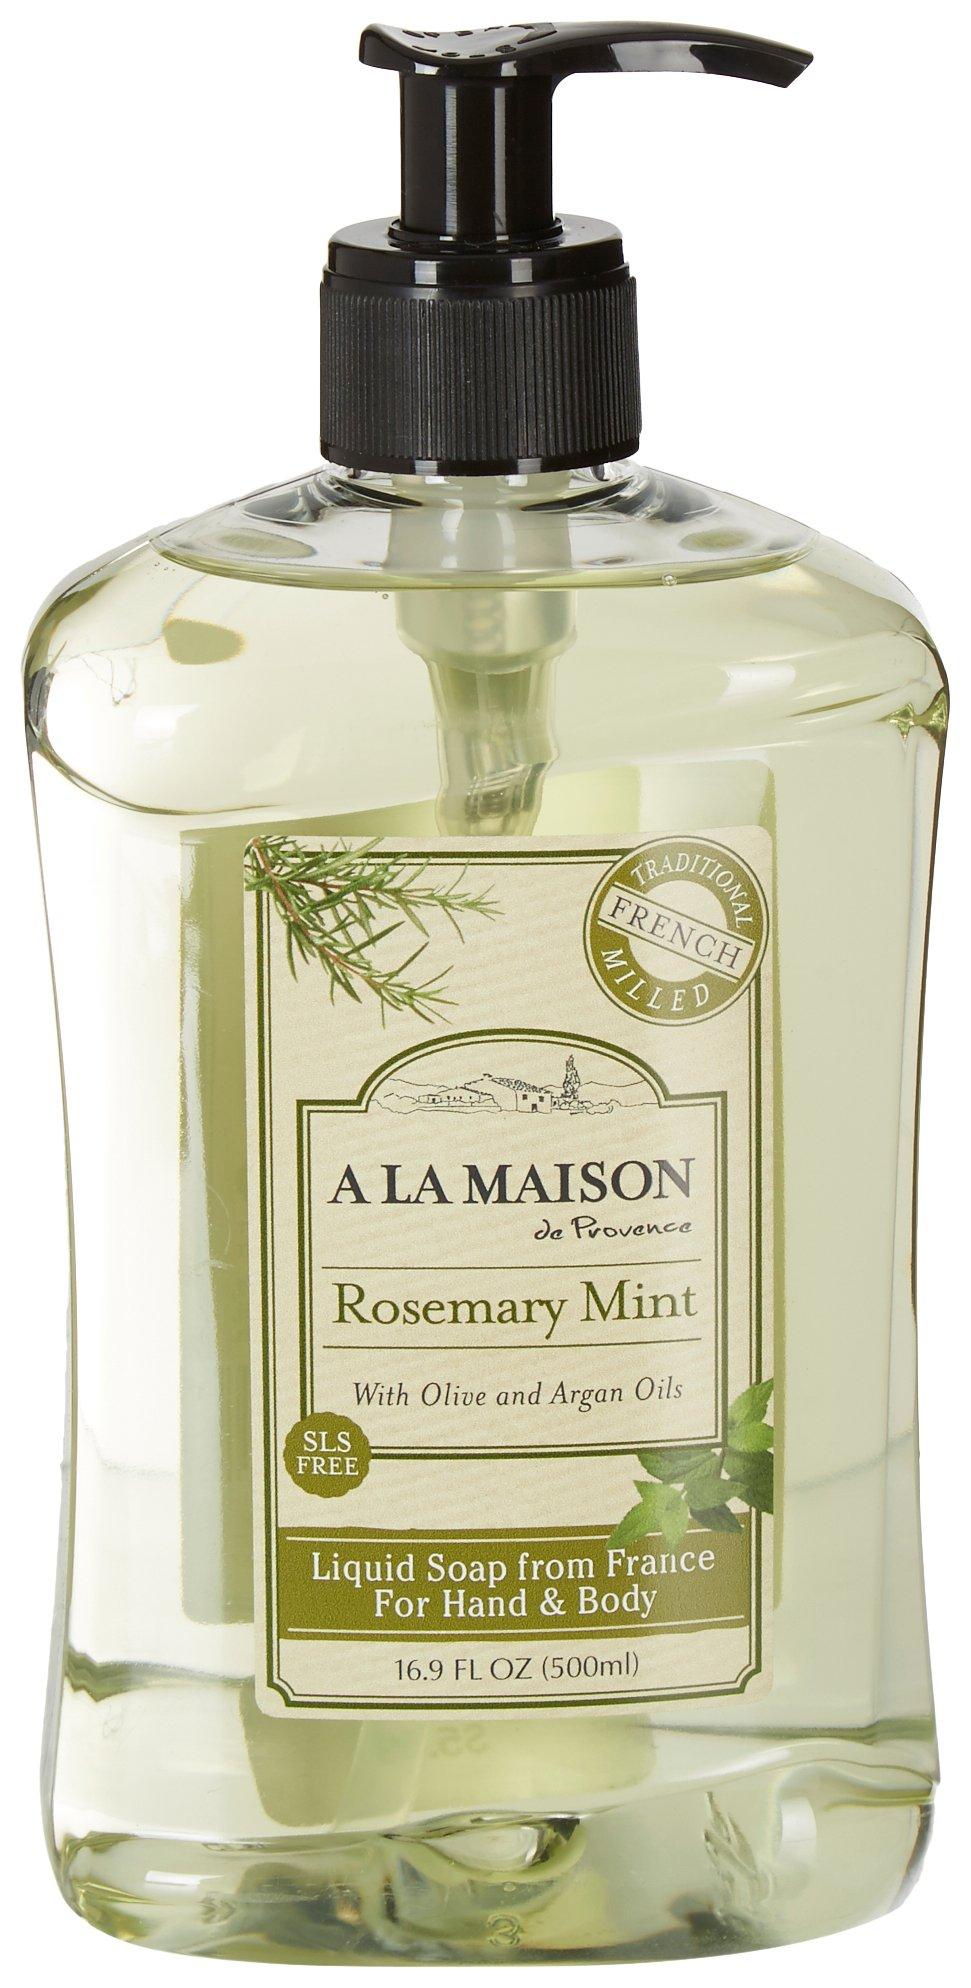 A La Maison Rosemary Mint Hand & Body